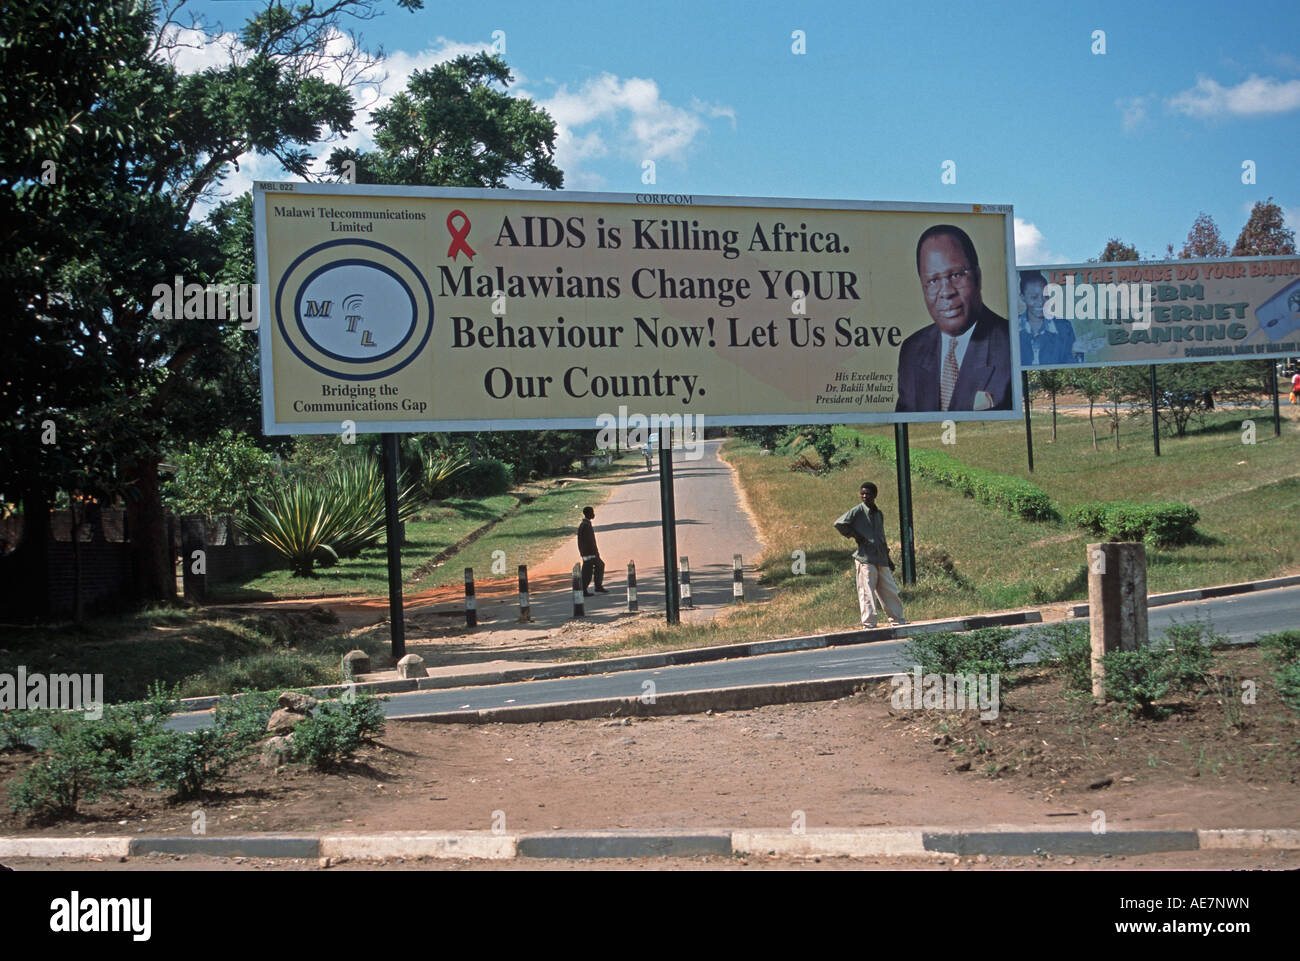 Großen AIDS-Plakatwand mit Präsidenten Foto Aids tötet Afrika-Malawi ändern Ihr Verhalten nun Blantyre Malawi Stockfoto